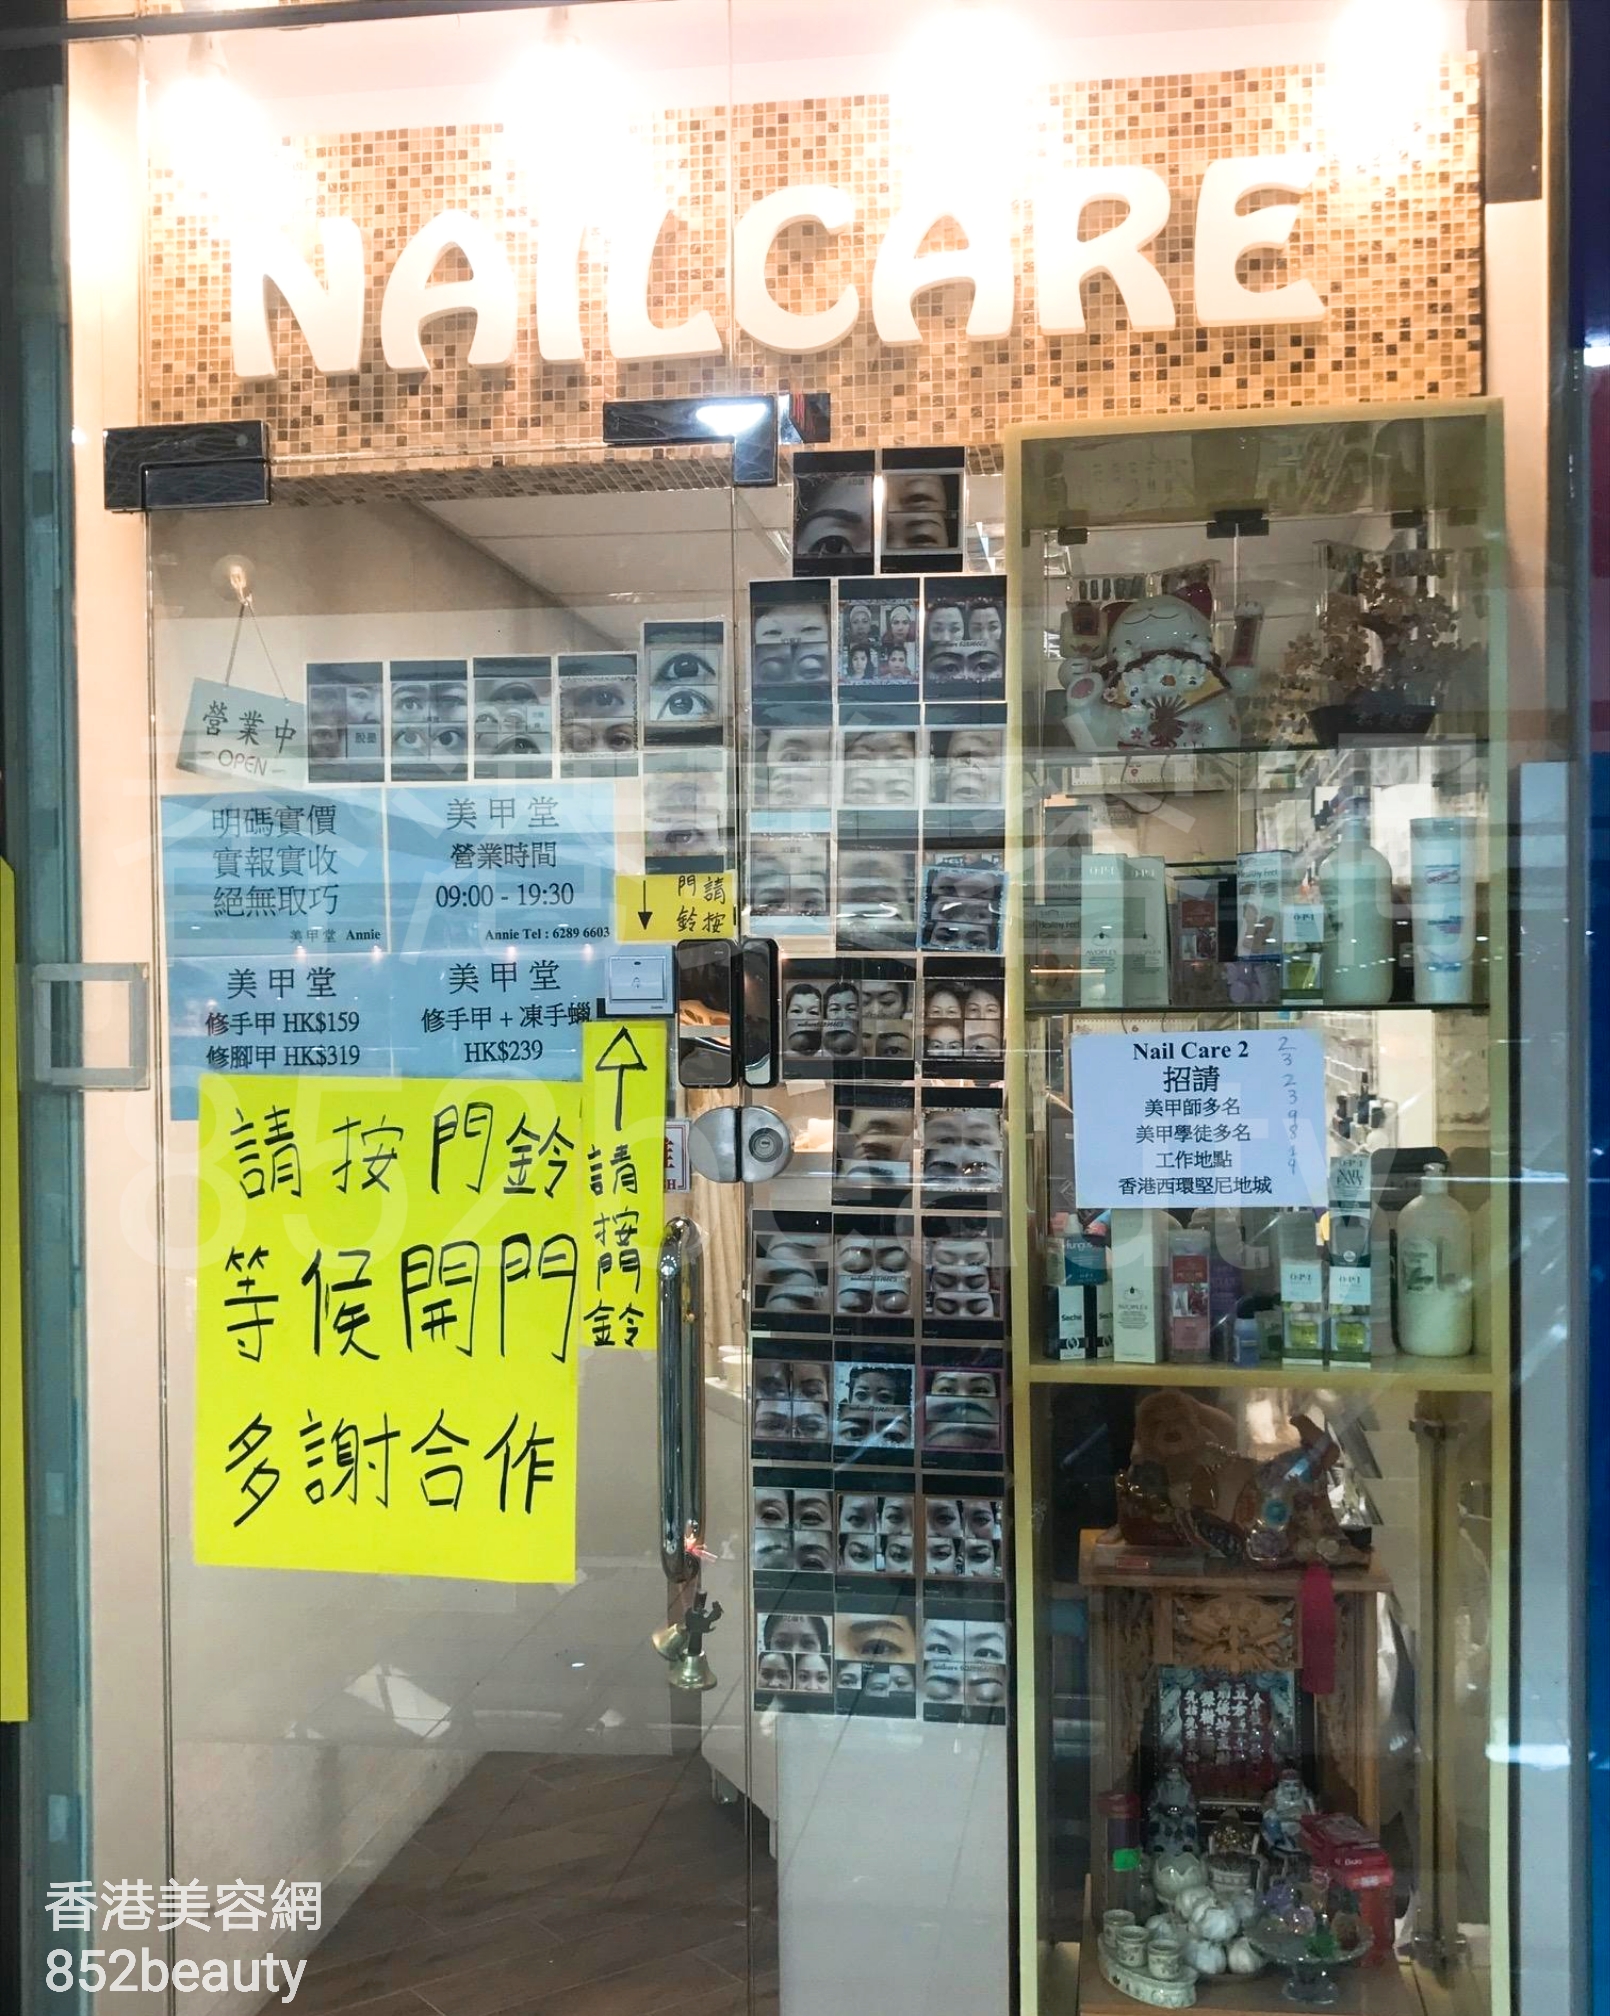 香港美容網 Hong Kong Beauty Salon 美容院 / 美容師: Nail Care 美甲堂